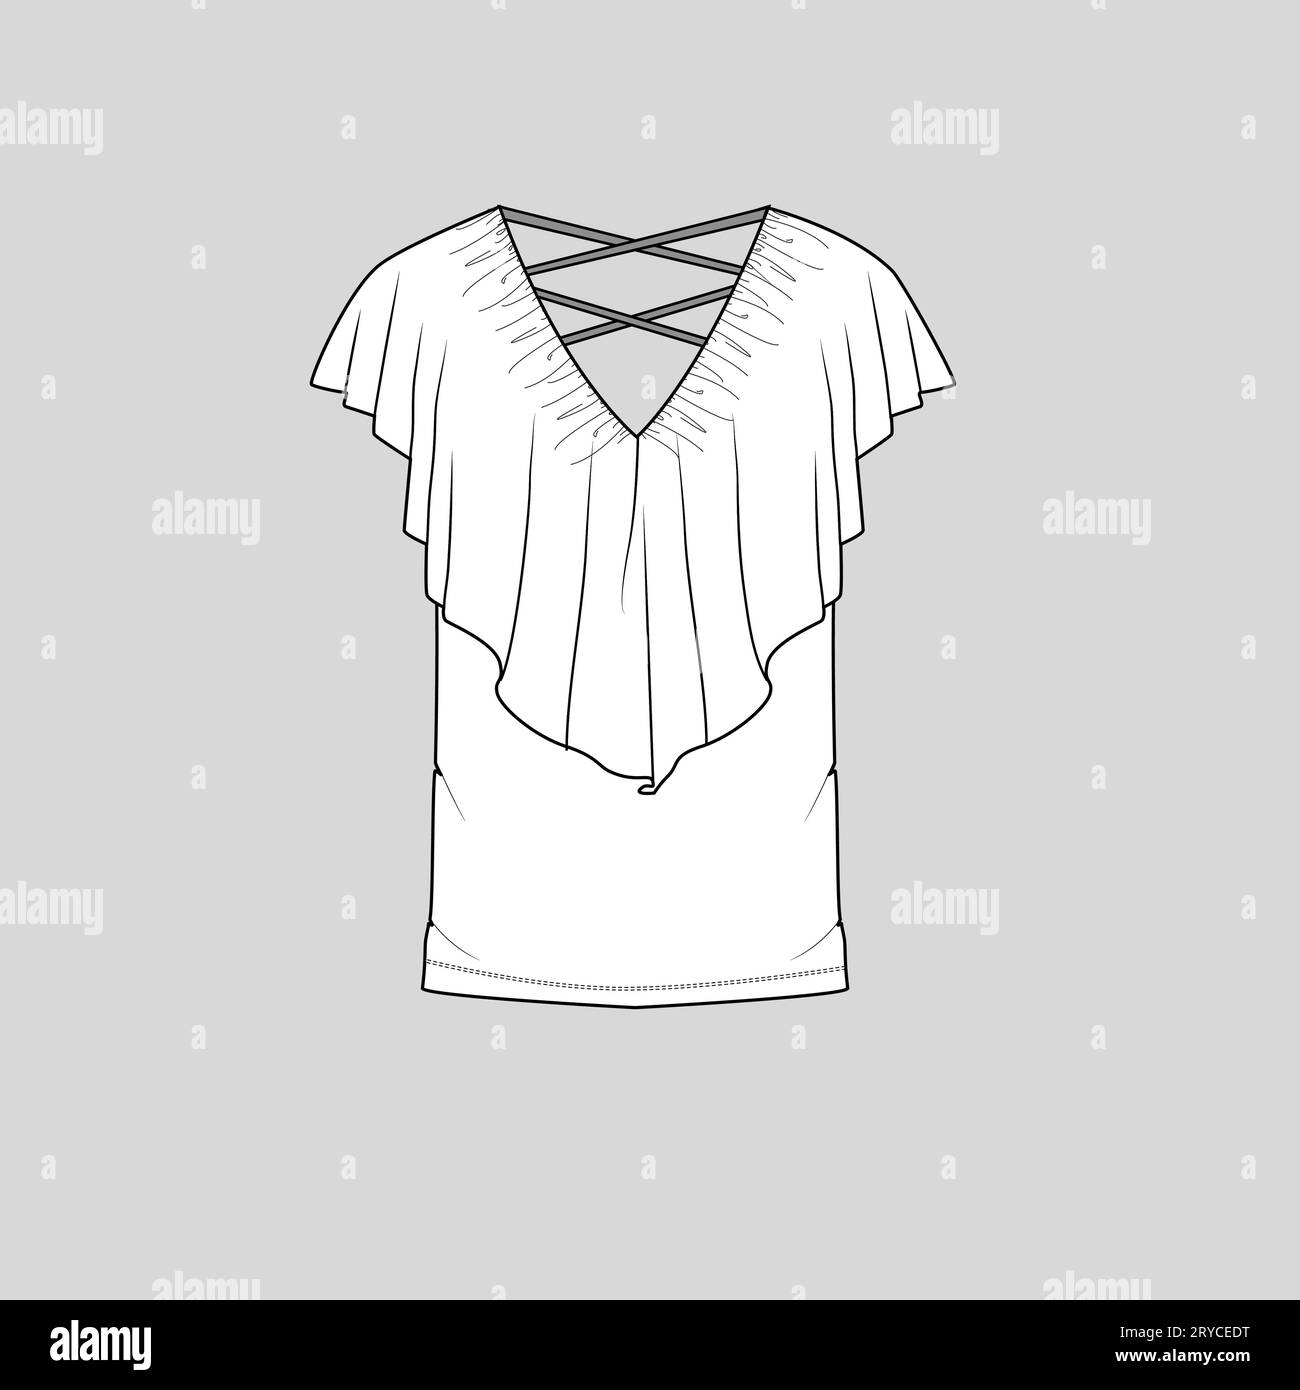 Femmes Fashion V col volants t-shirt sans manches haut blouse plat esquisse technique modèle de dessin vecteur vecteur de conception Illustration de Vecteur